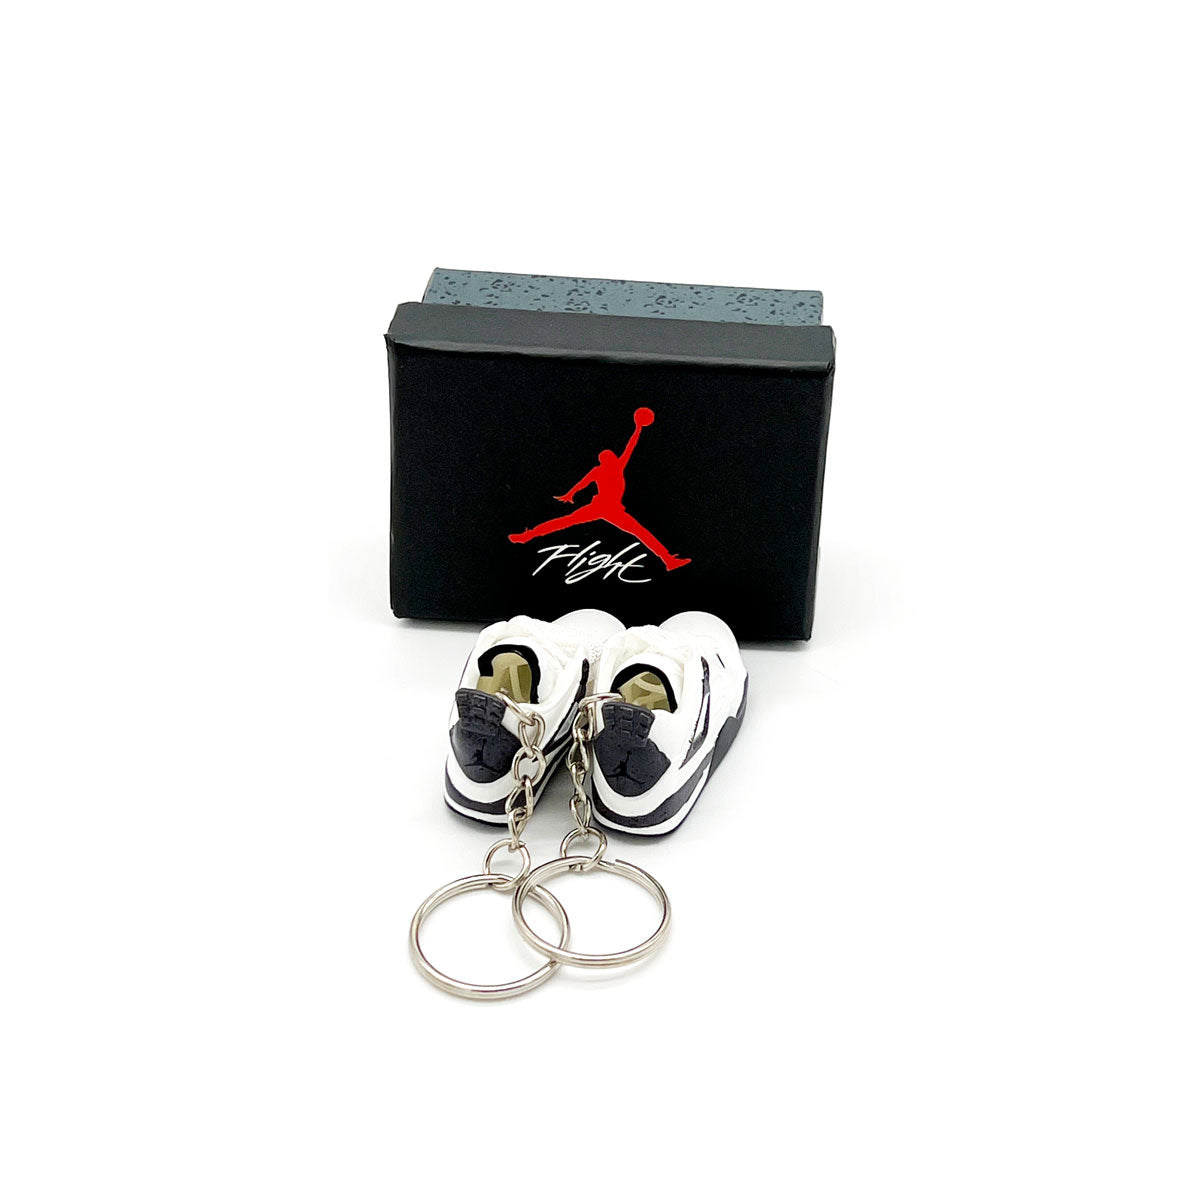 3D Sneaker Keychain- Air Jordan 4 White Cement Pair